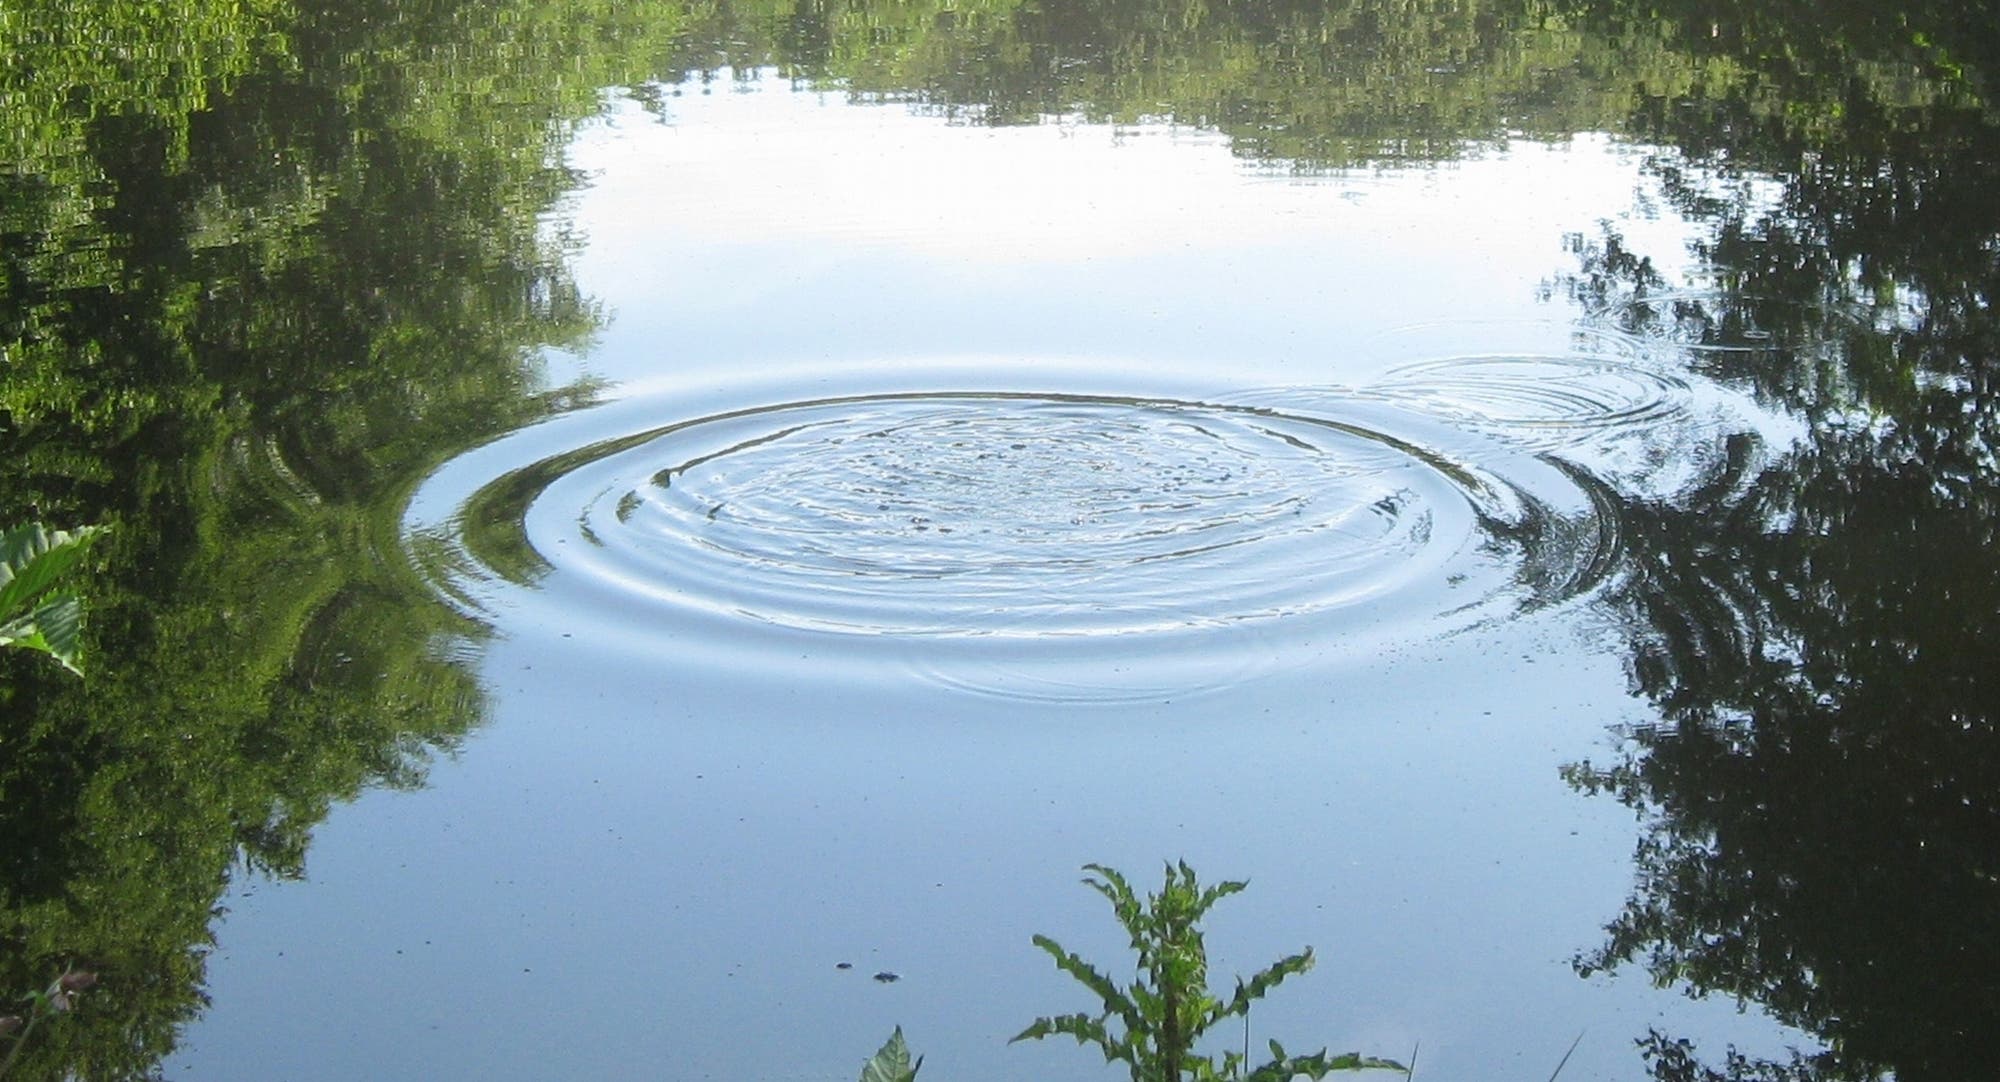 Foto ringförmiger Wellen in einem Teich